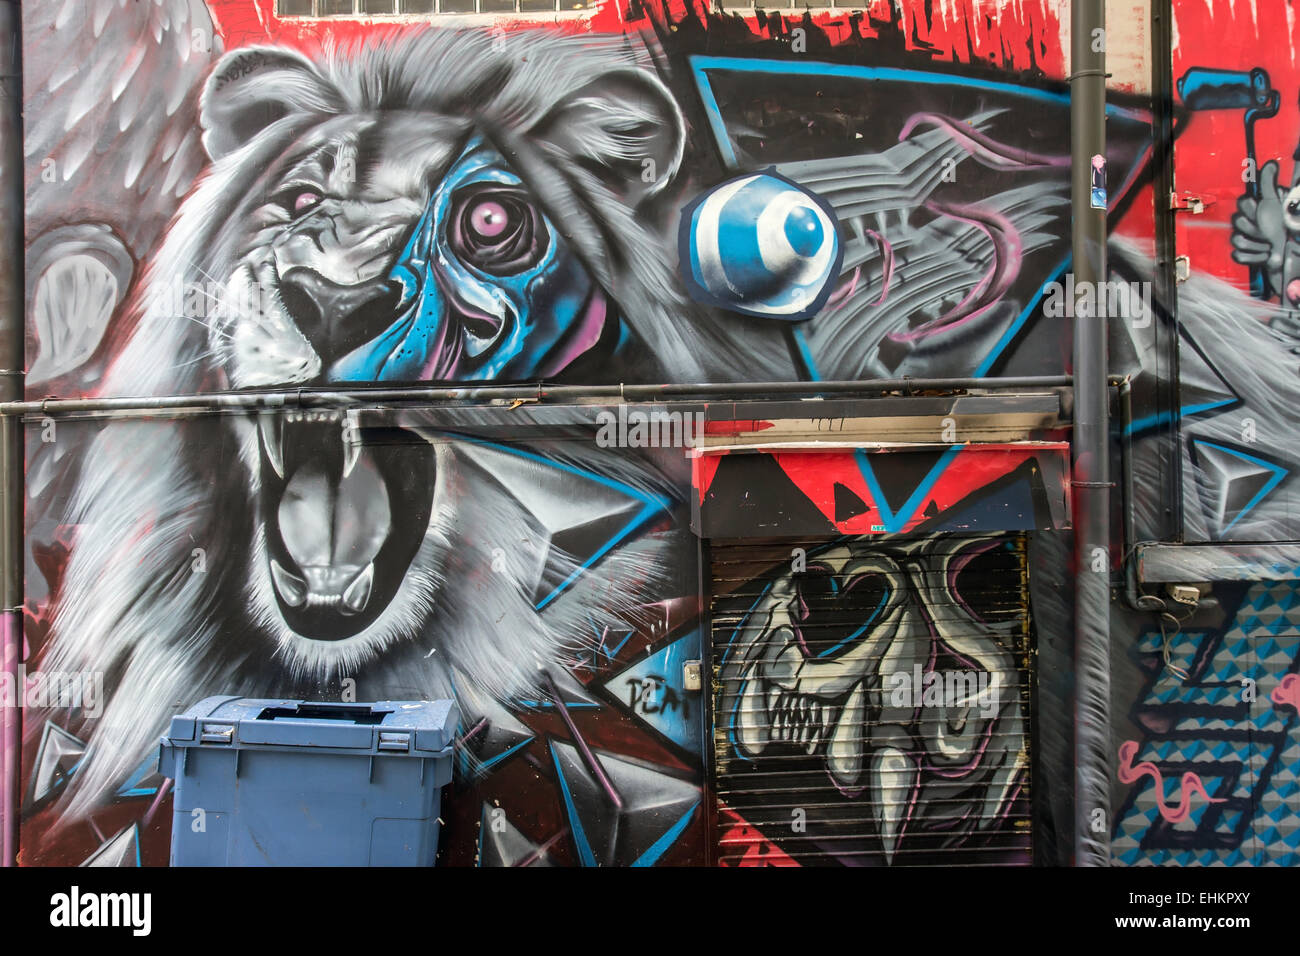 Lion on graffiti wall urban art Stock Photo